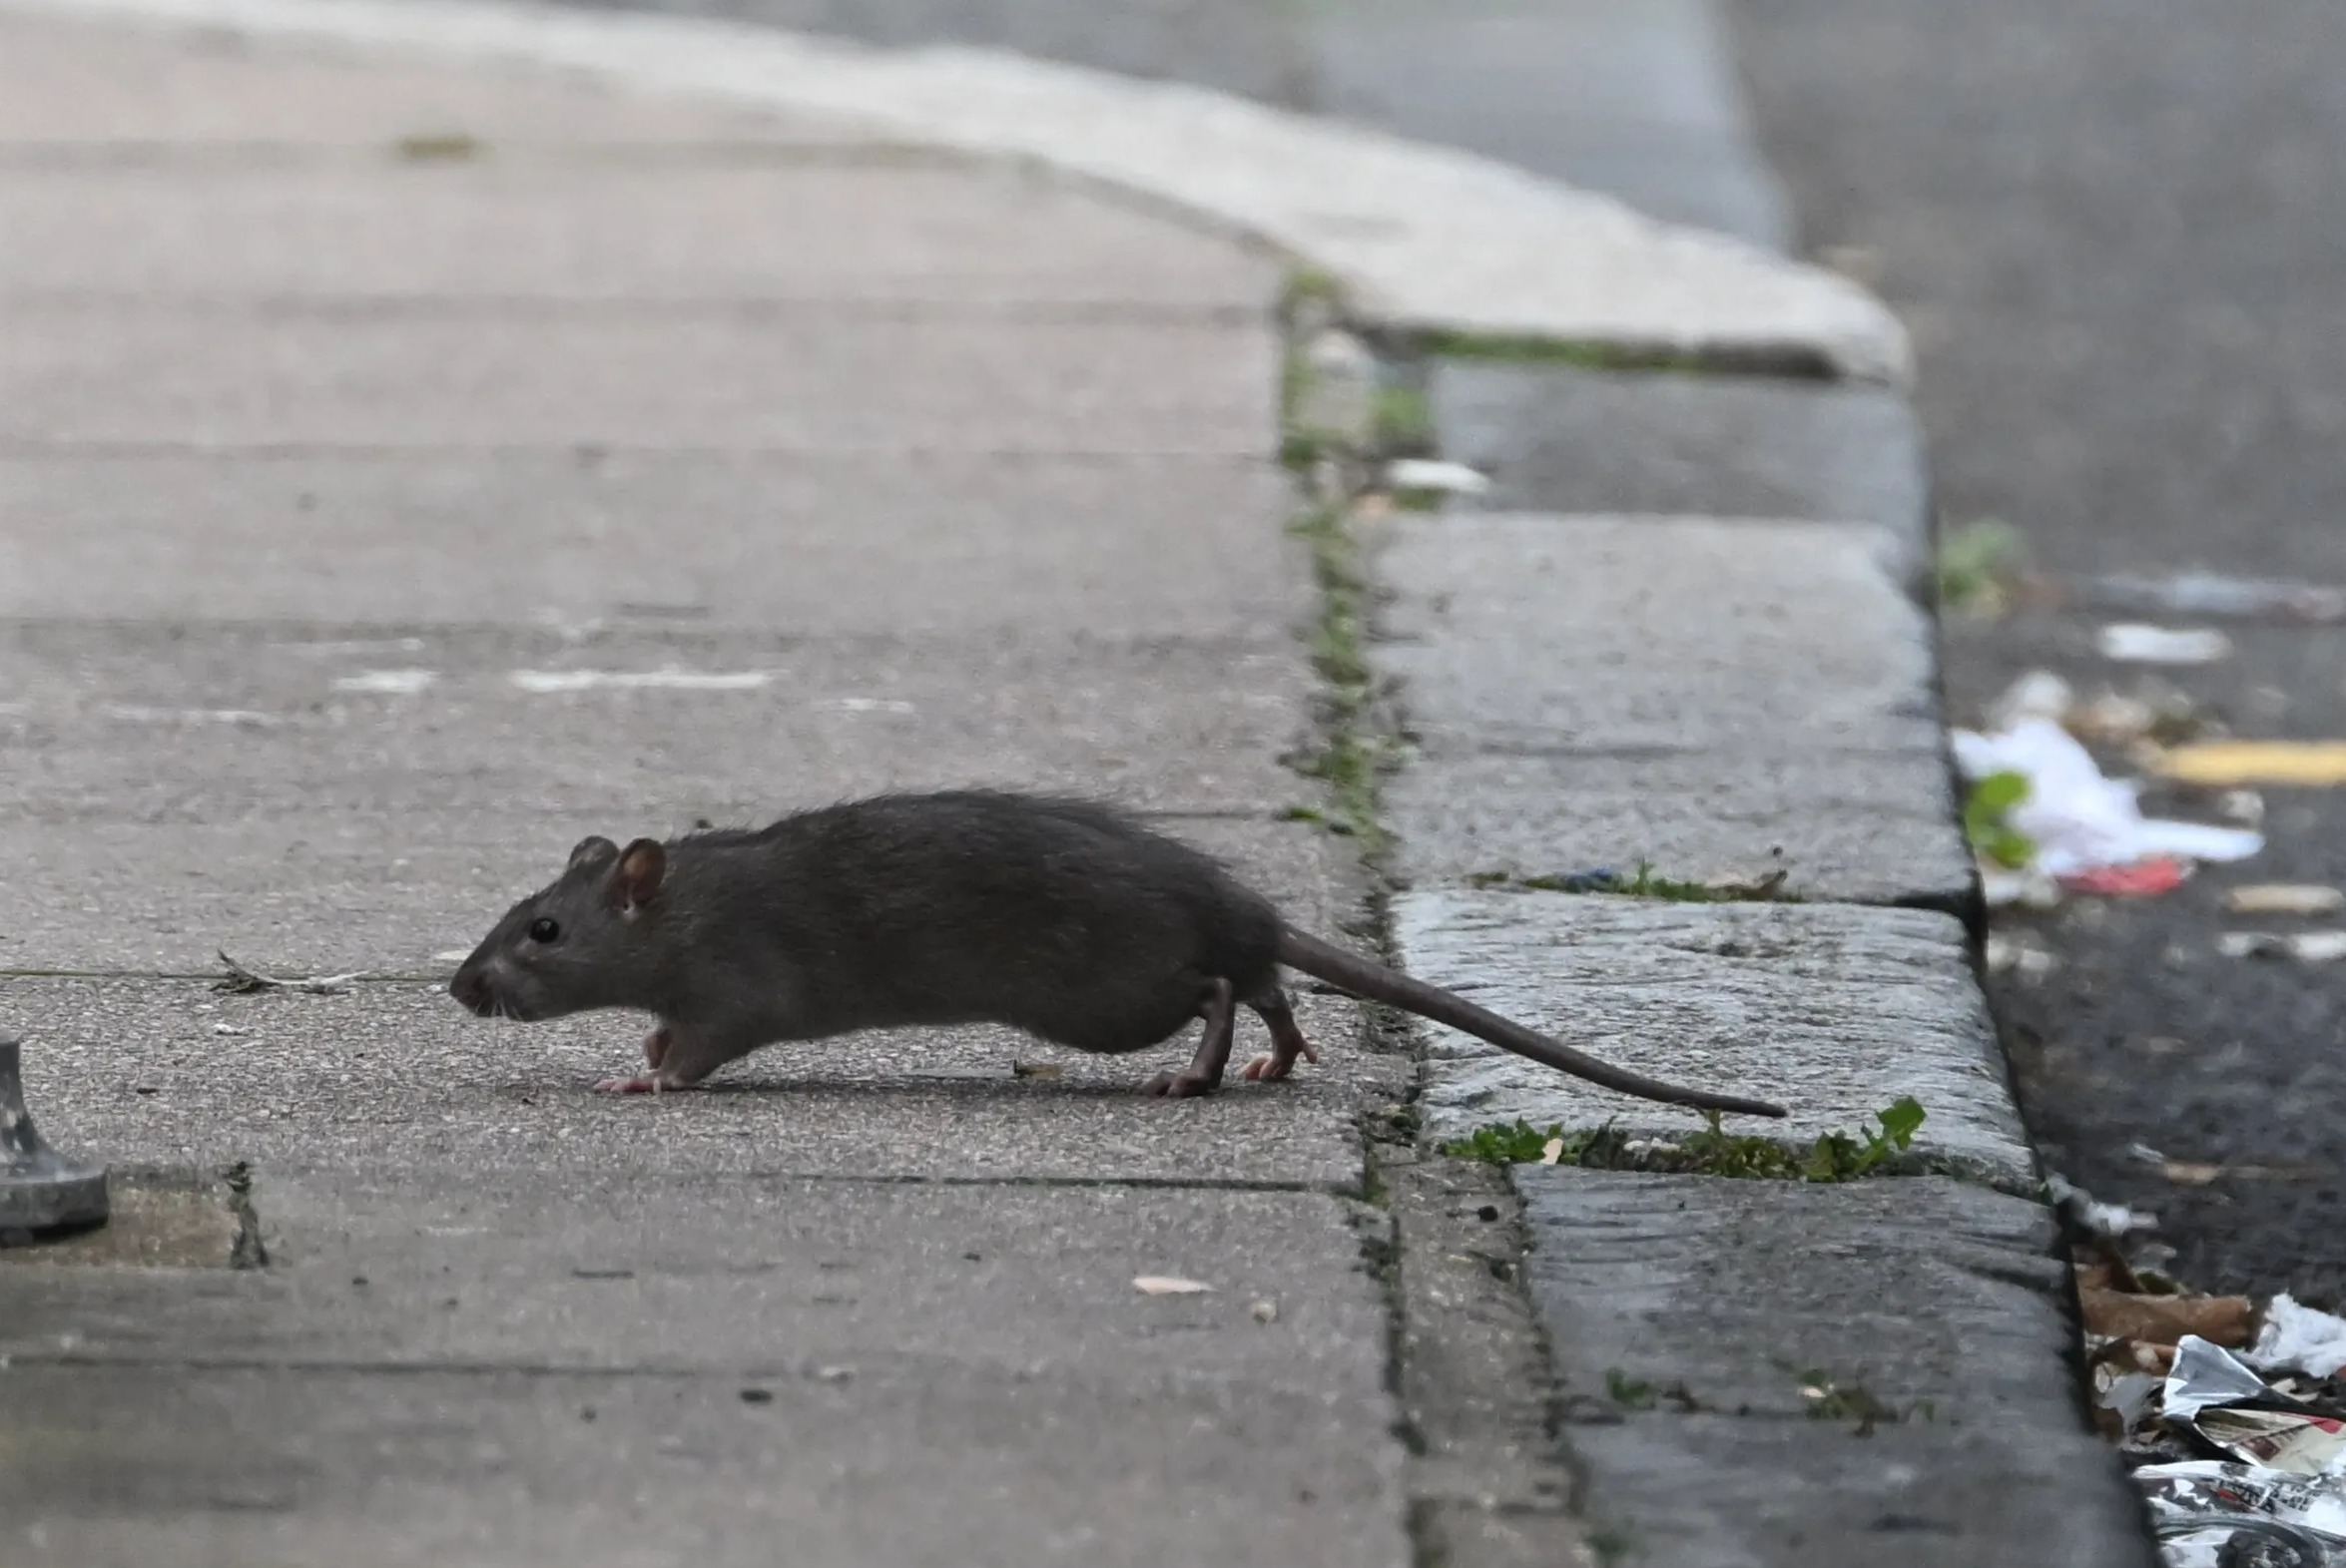 Während der Müllstreik andauert, läuft eine Ratte zwischen den Käufern umher